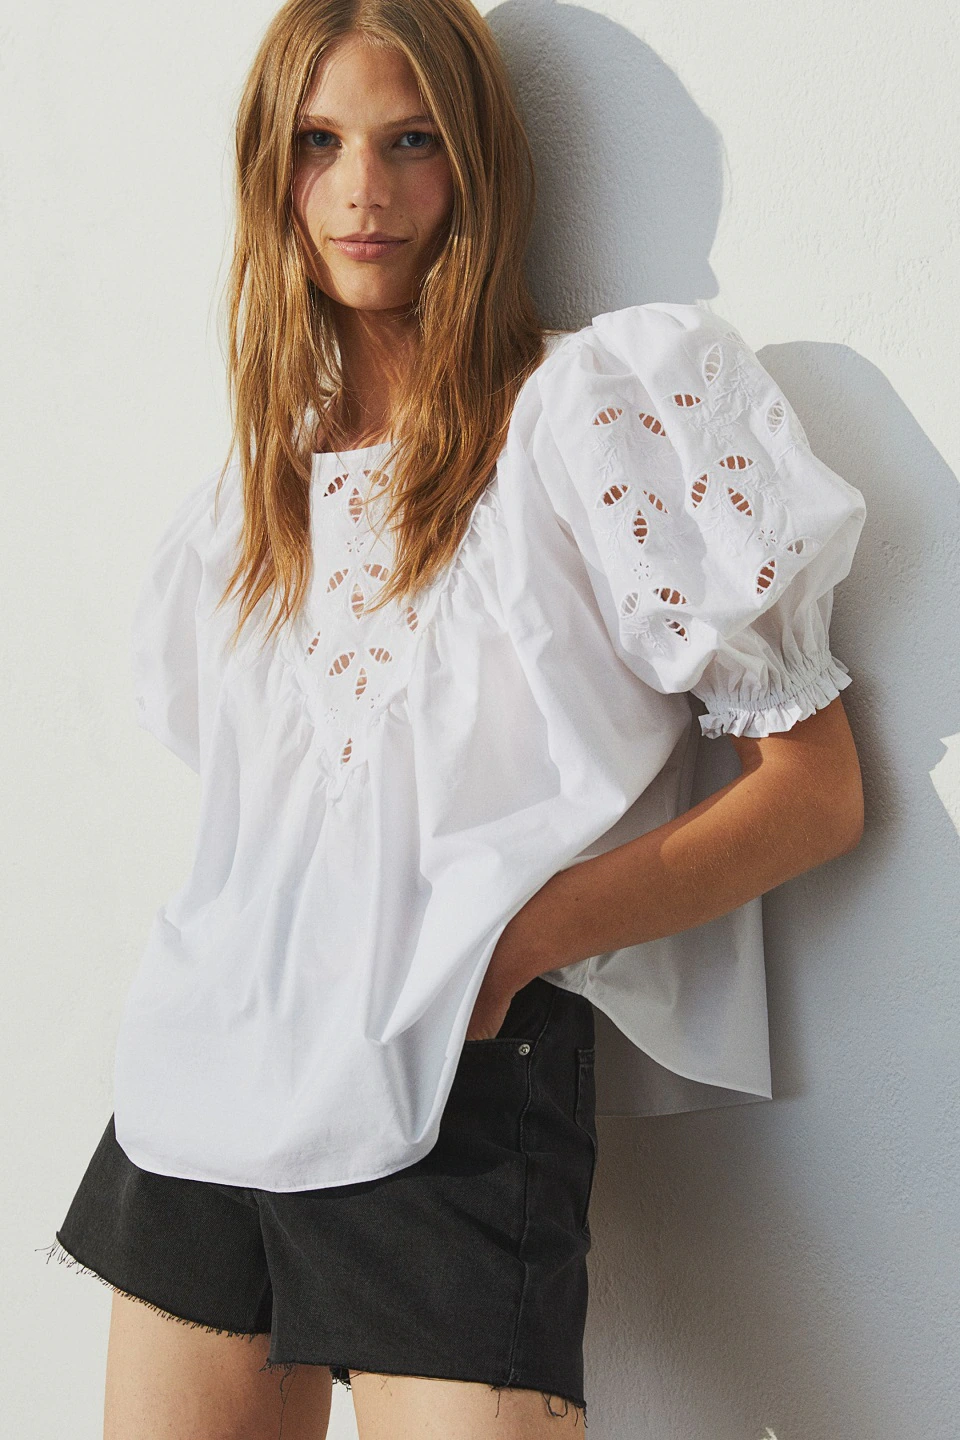 Fotos: Las blusas blancas de la nueva colección de H&M son un flechazo de maravilla a cualquier edad | Mujer Hoy